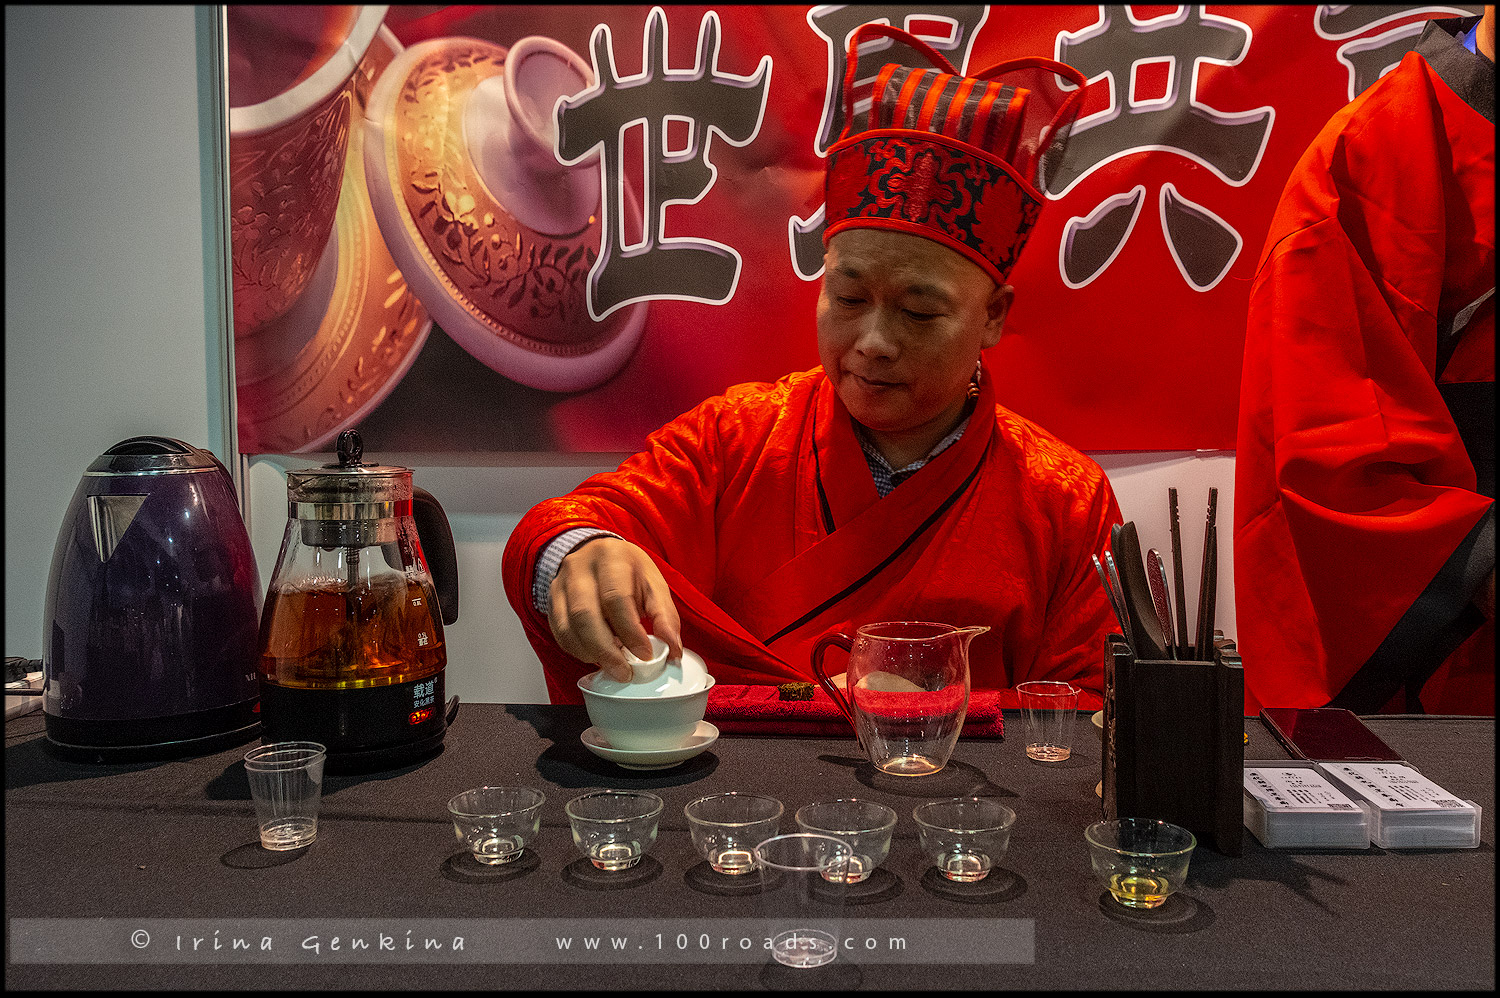 Китайский культурный фестиваль и Tea Expo, Chinese Cultural Festival & Tea Expo, Дарлинг Харбор, Darling Harbour, Сидней, Sydney, Австралия, Australia